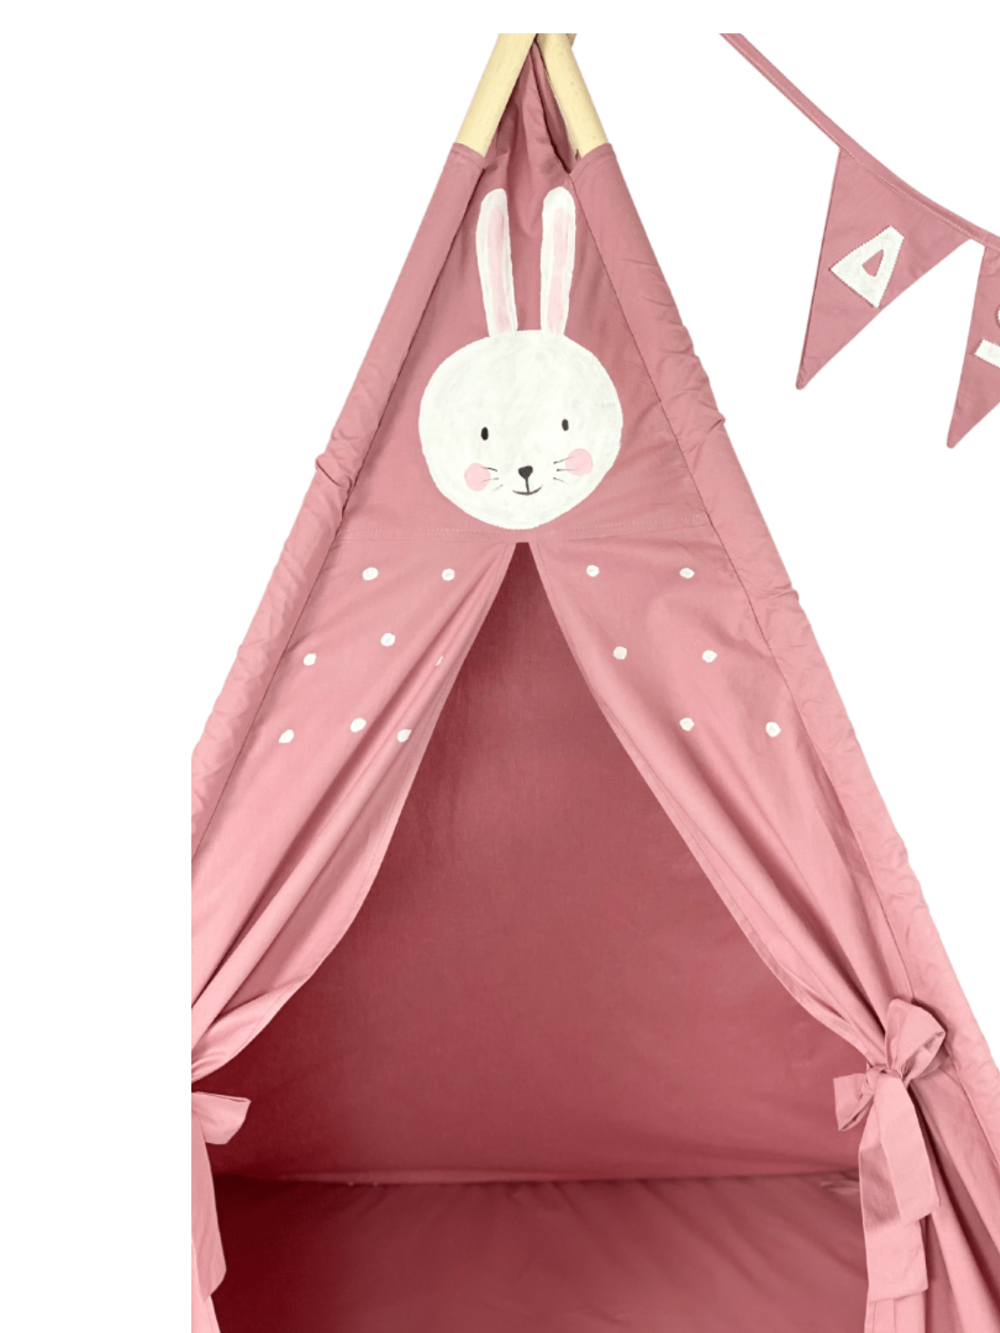 Children's Tent - teepee tent Bunny